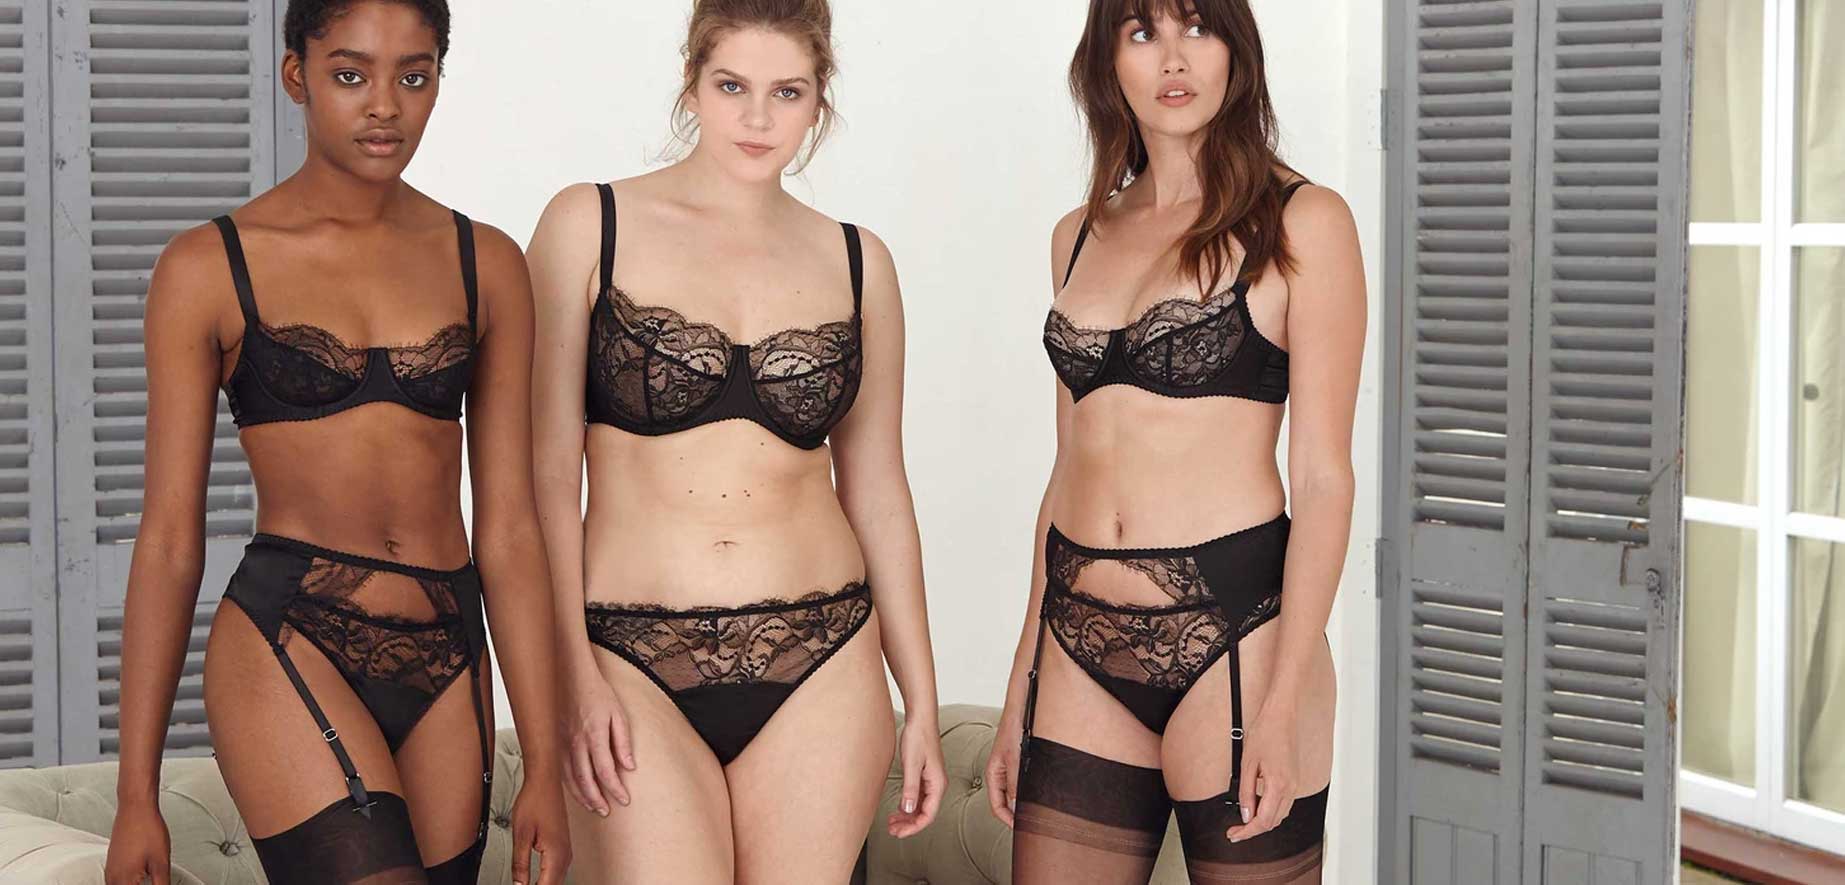 3 models wear luxury Fleur of England luxury lingerie sets in black lace 